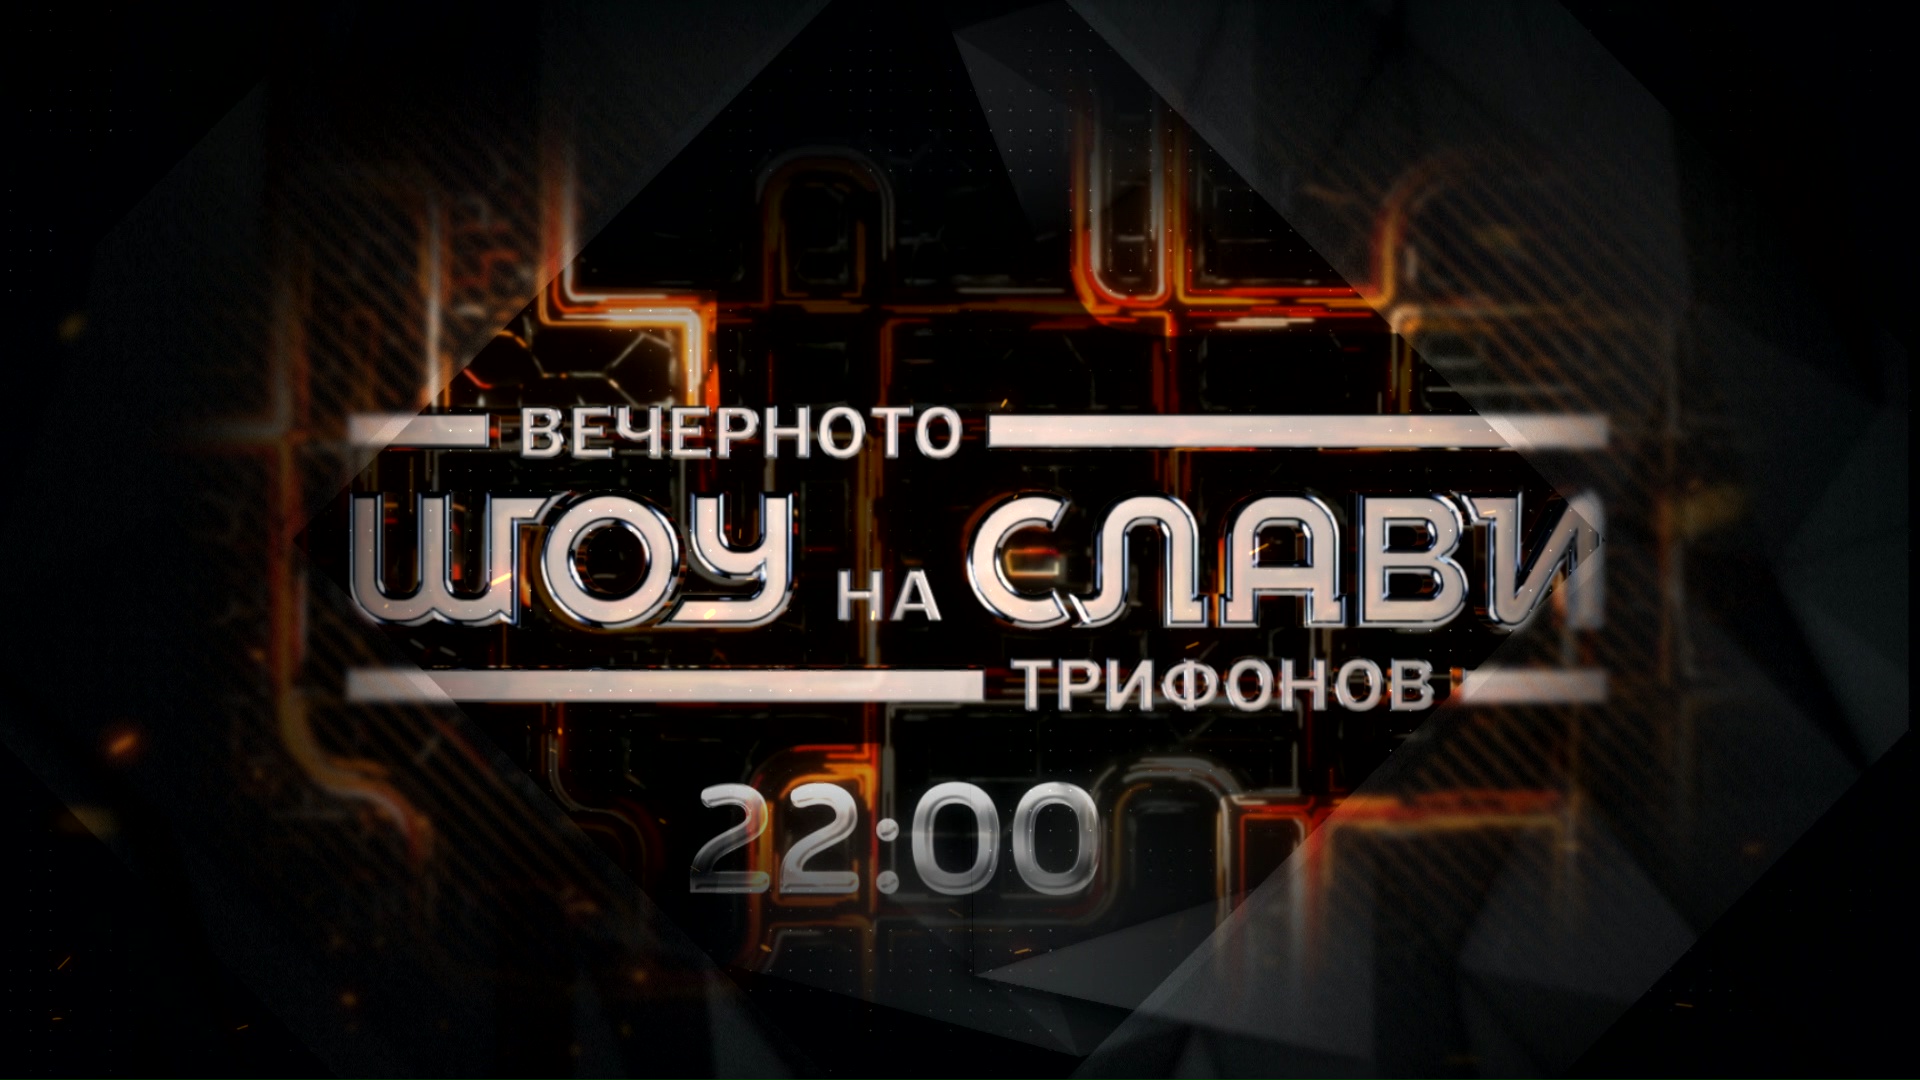 Watch "Slavi Trifonov's Evening Show"